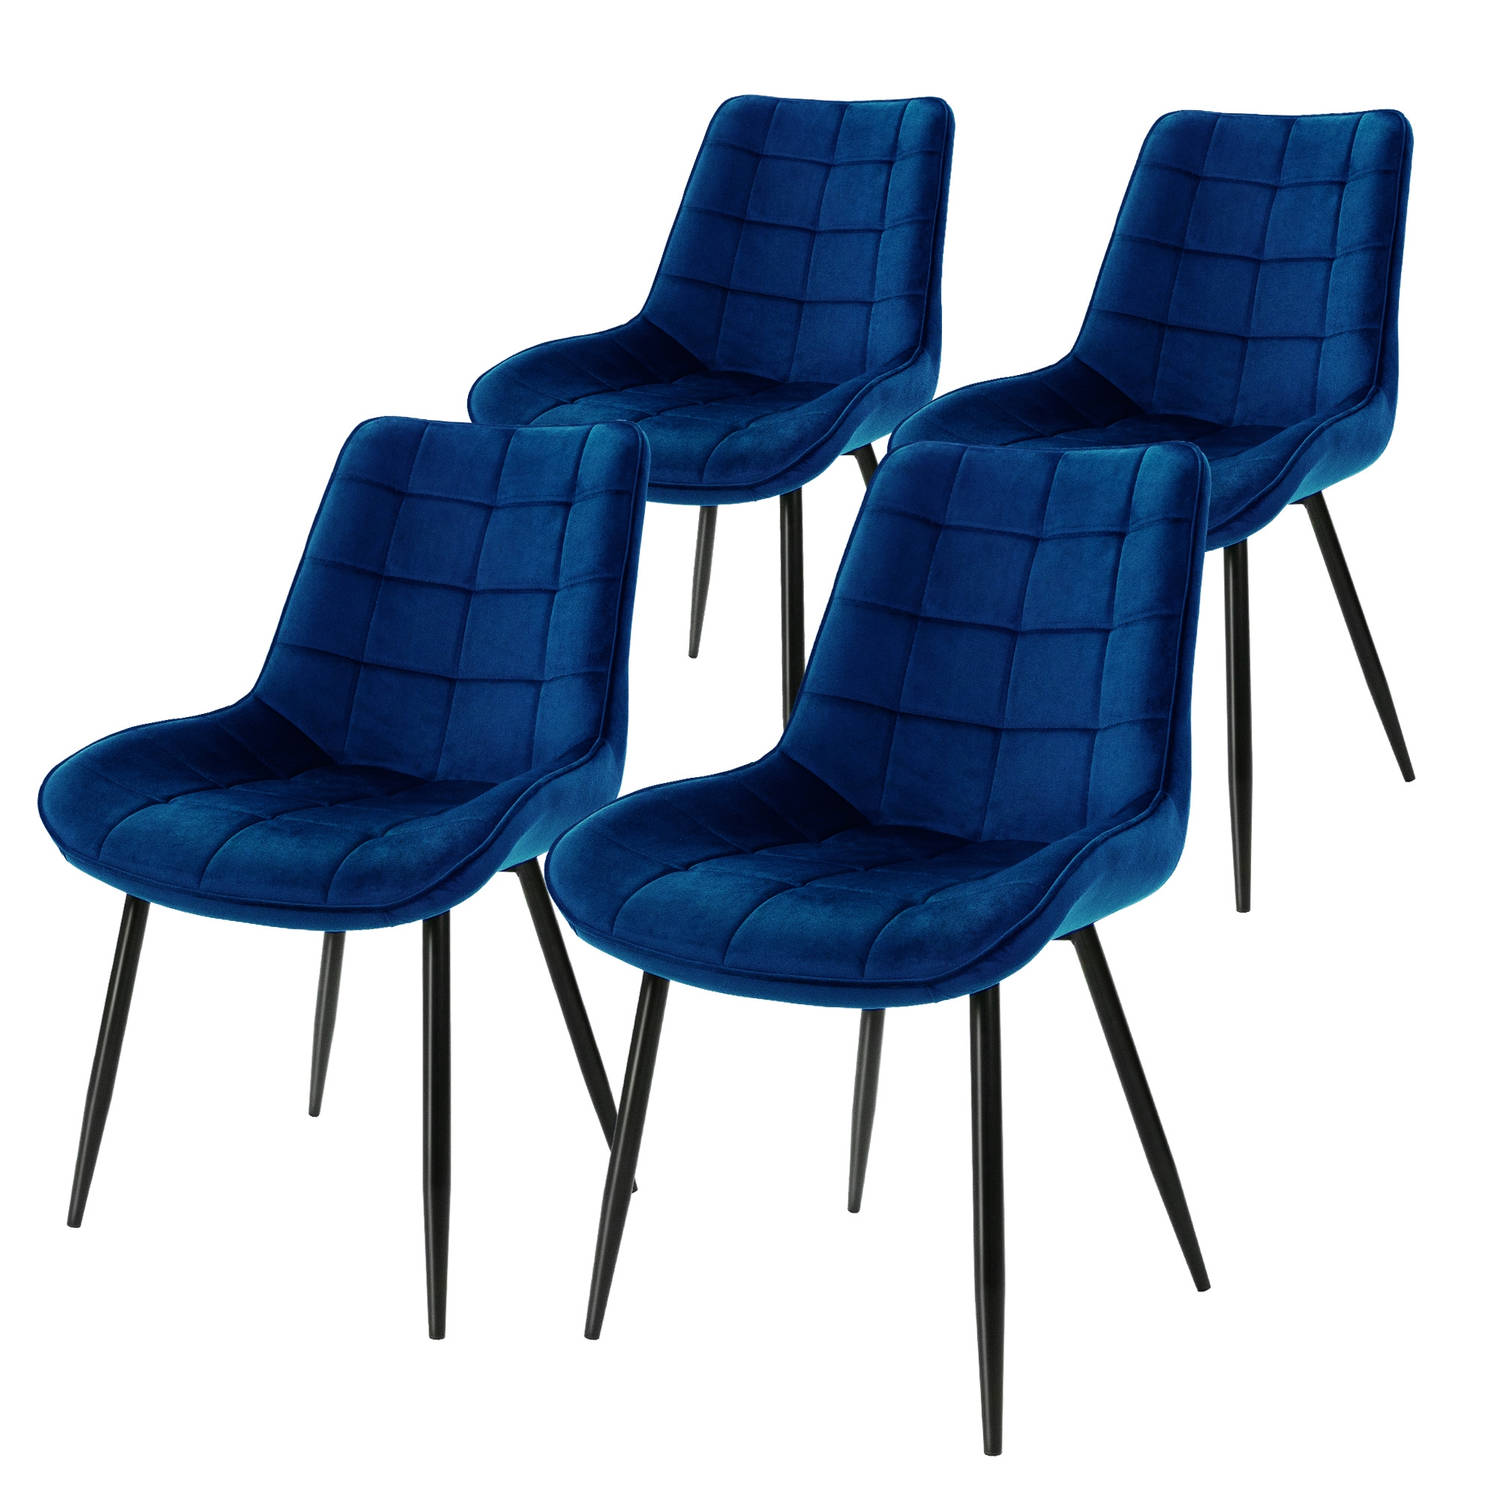 ML-Design Set van 4 eetkamerstoelen met rugleuning, donkerblauw, keukenstoel met fluwelen bekleding, gestoffeerde stoel met metalen poten, ergonomische stoel voor eettafel, eetkame